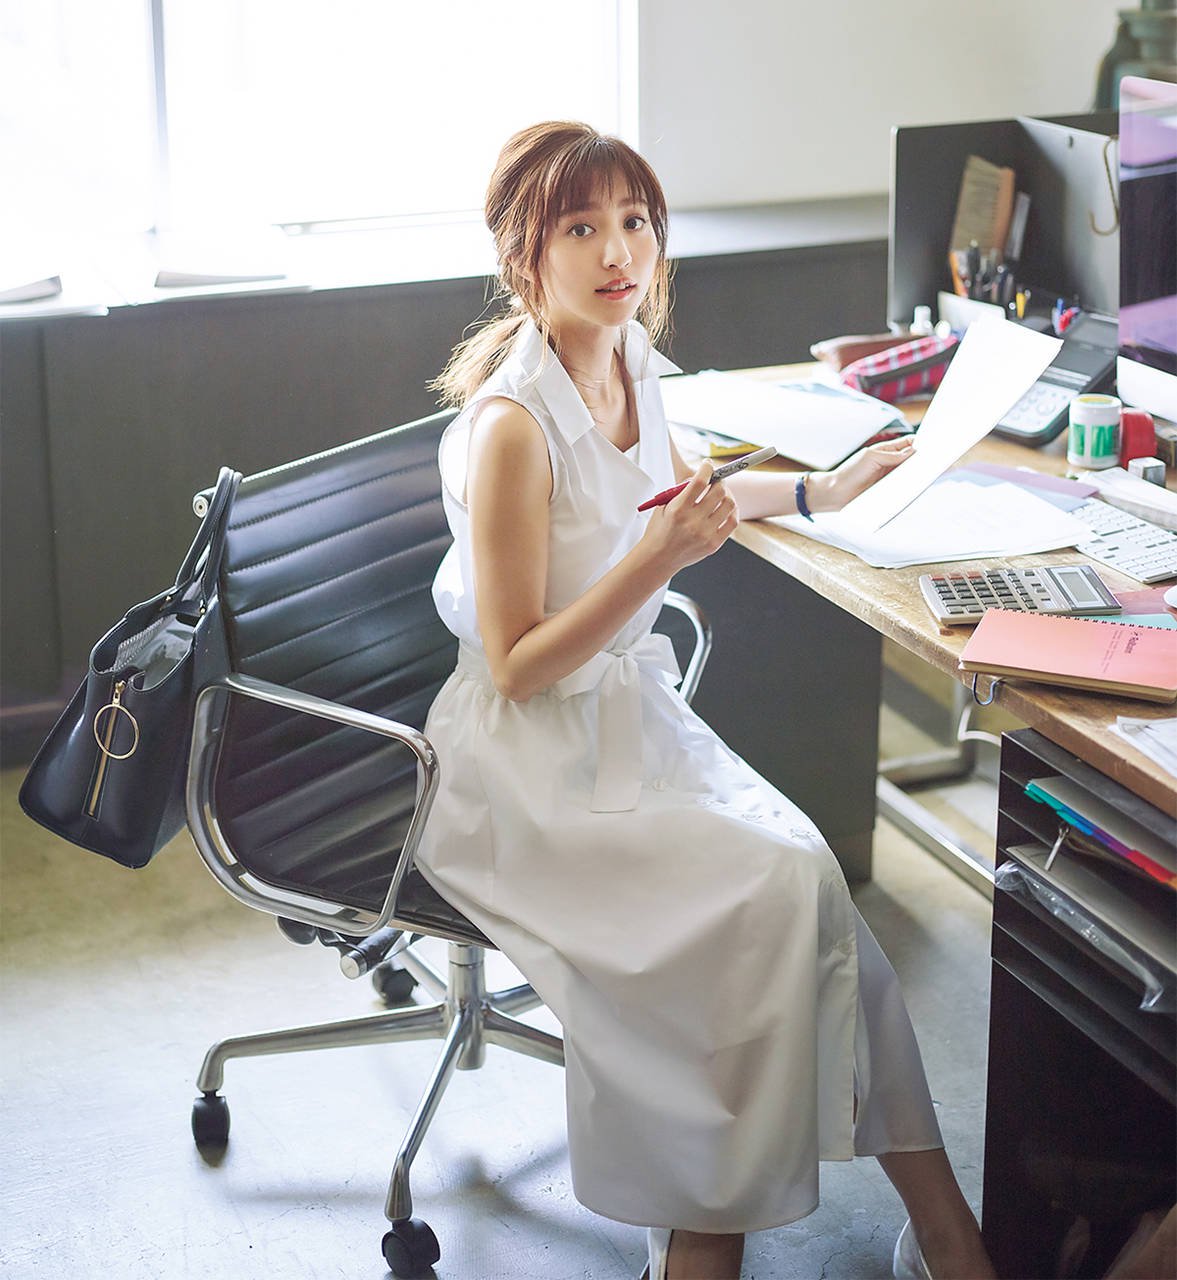 【ロイヤルパーティで ¥5900】クリーンな白ワンピで 全方位納得のオフィス美人